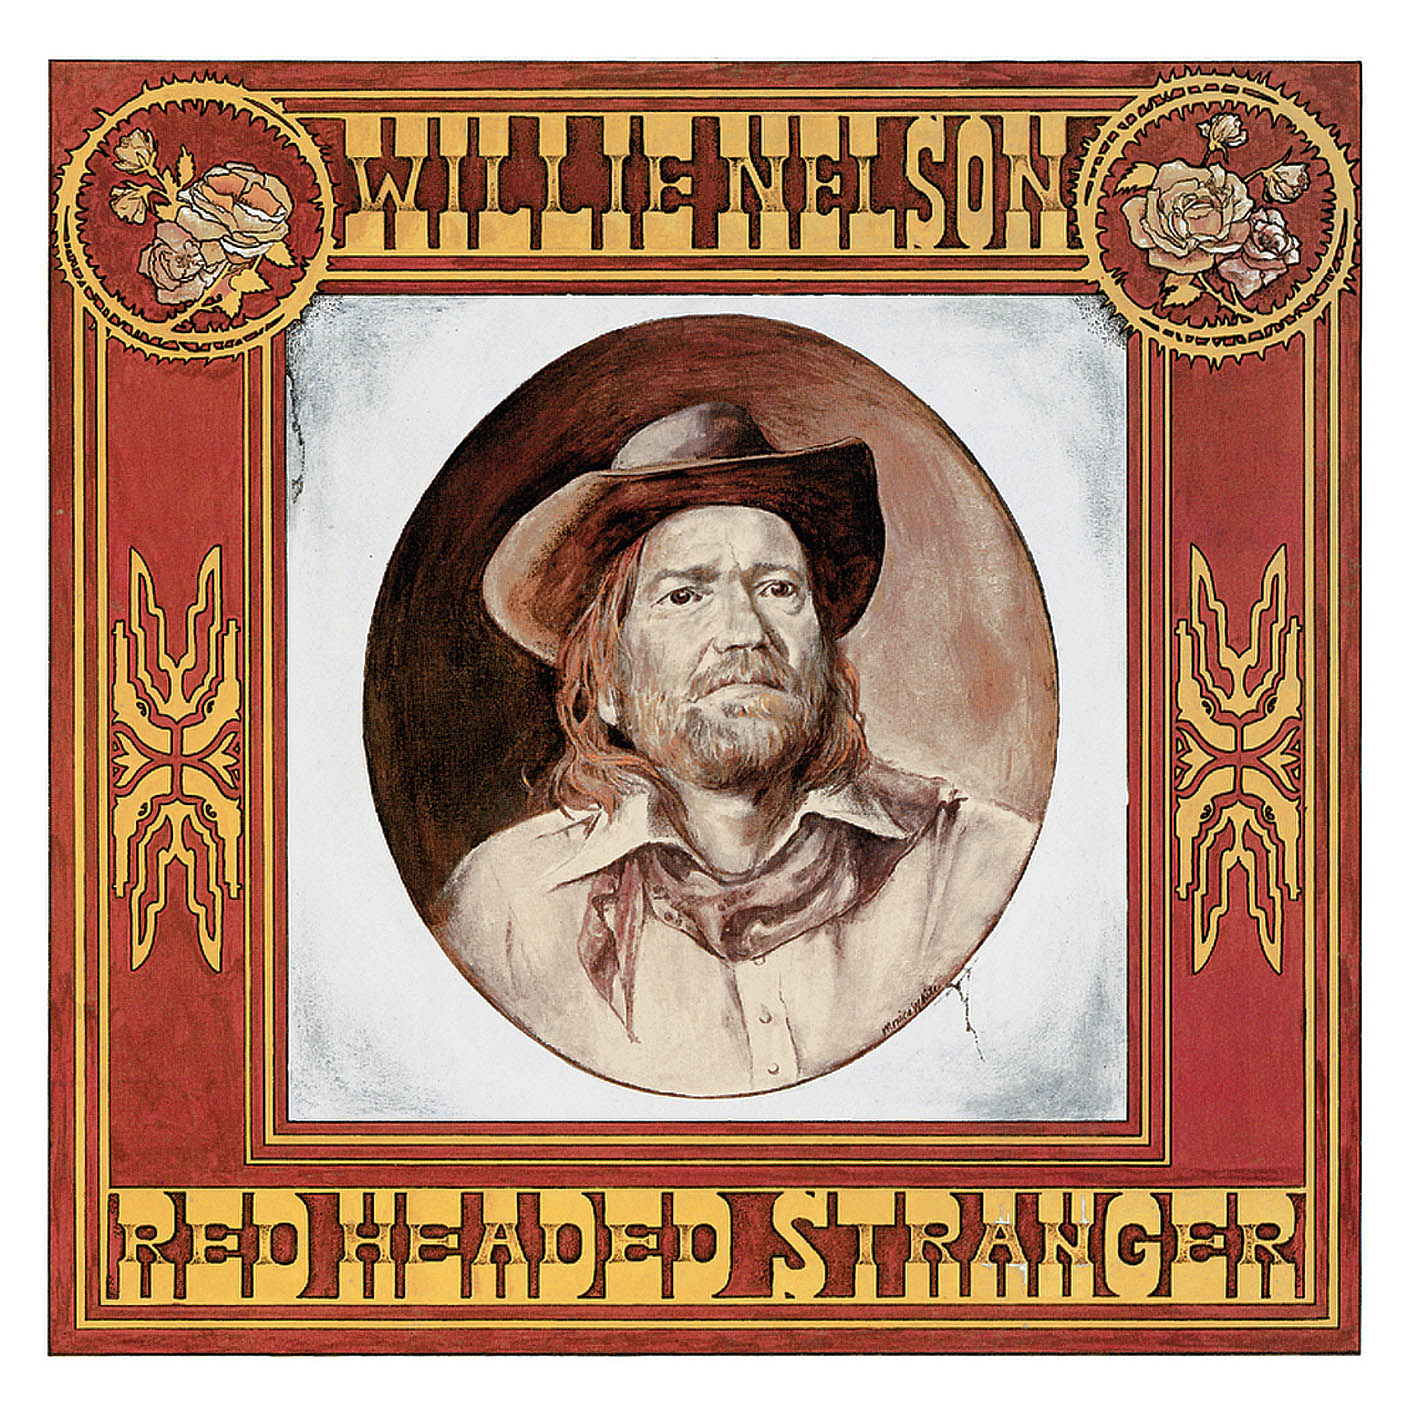 Willie Nelson – Red Headed Stranger (1975/2014) [HDTracks FLAC 24bit/96kHz]